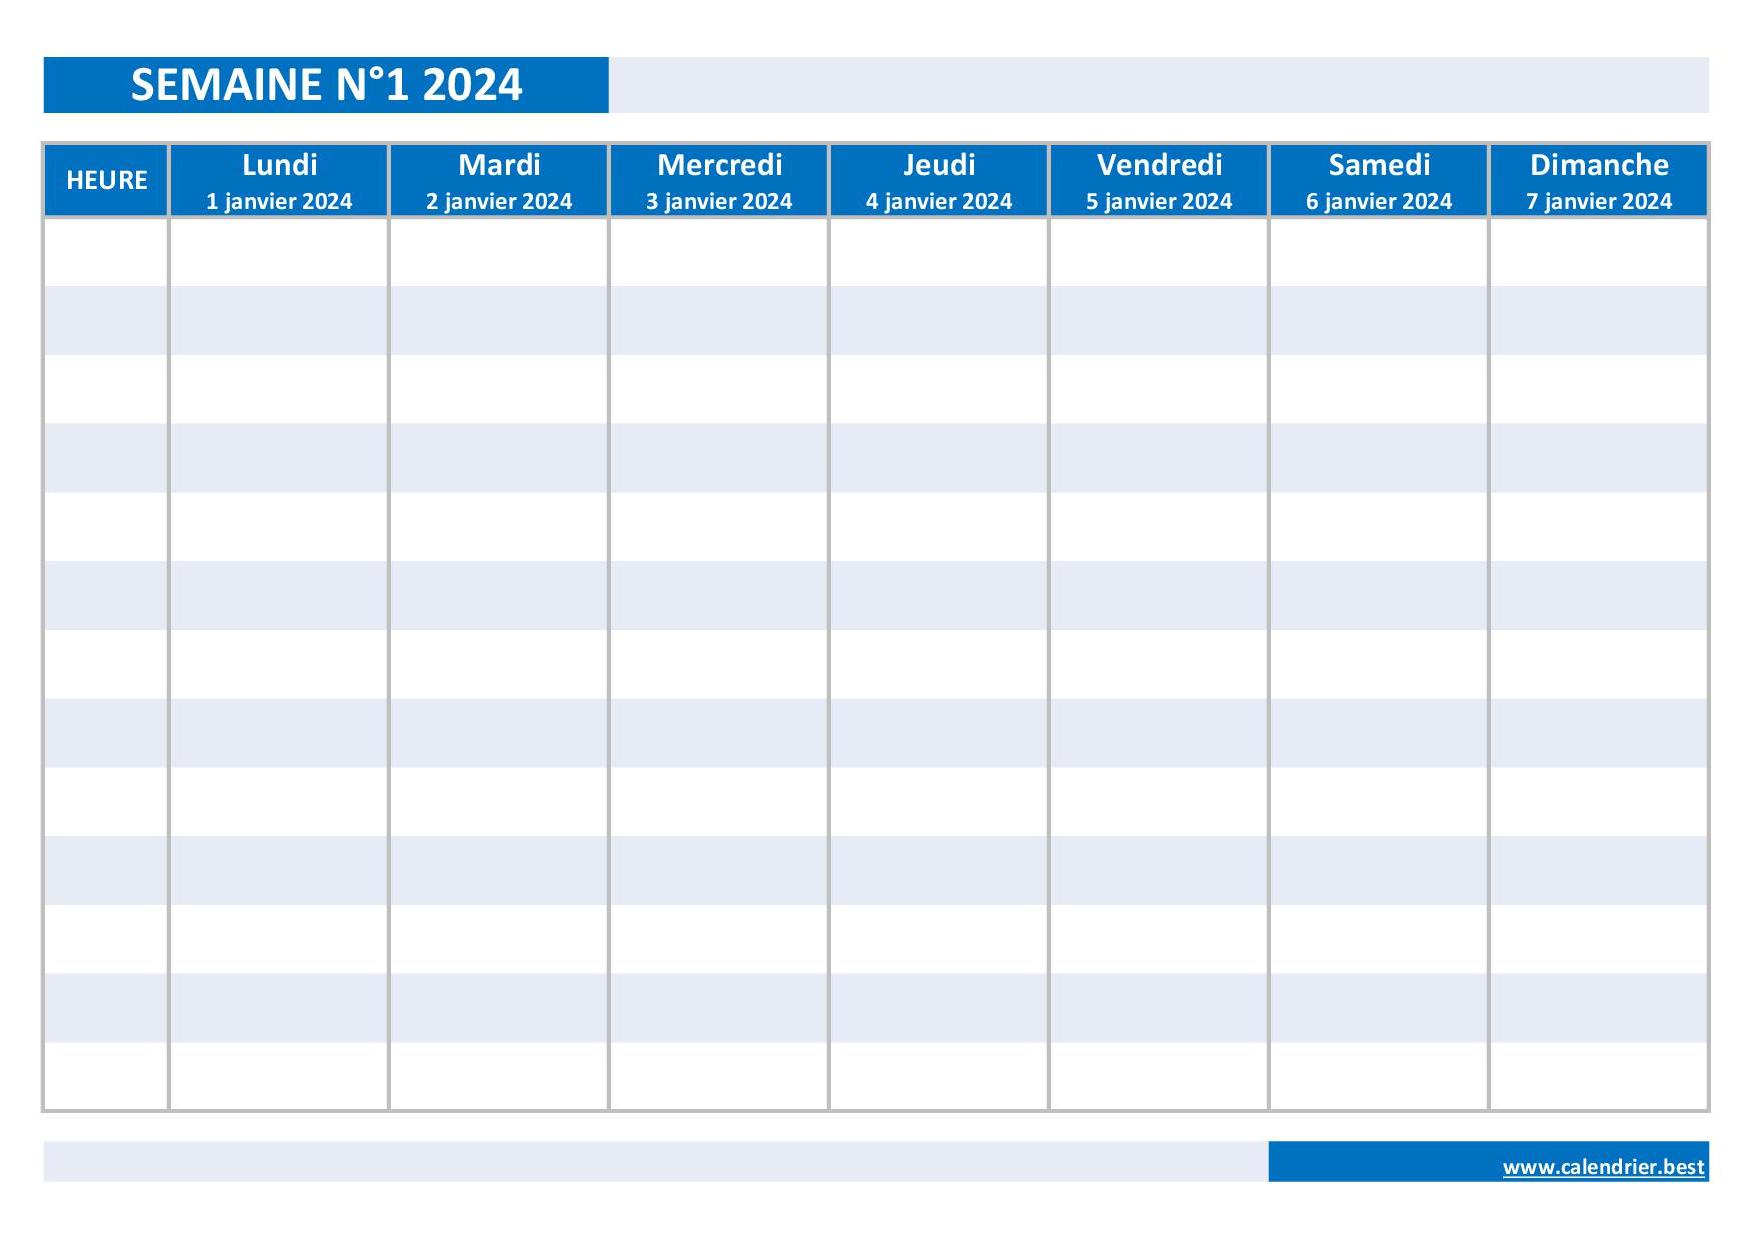 Semaine 1 2024 : dates, calendrier et planning hebdomadaire à imprimer